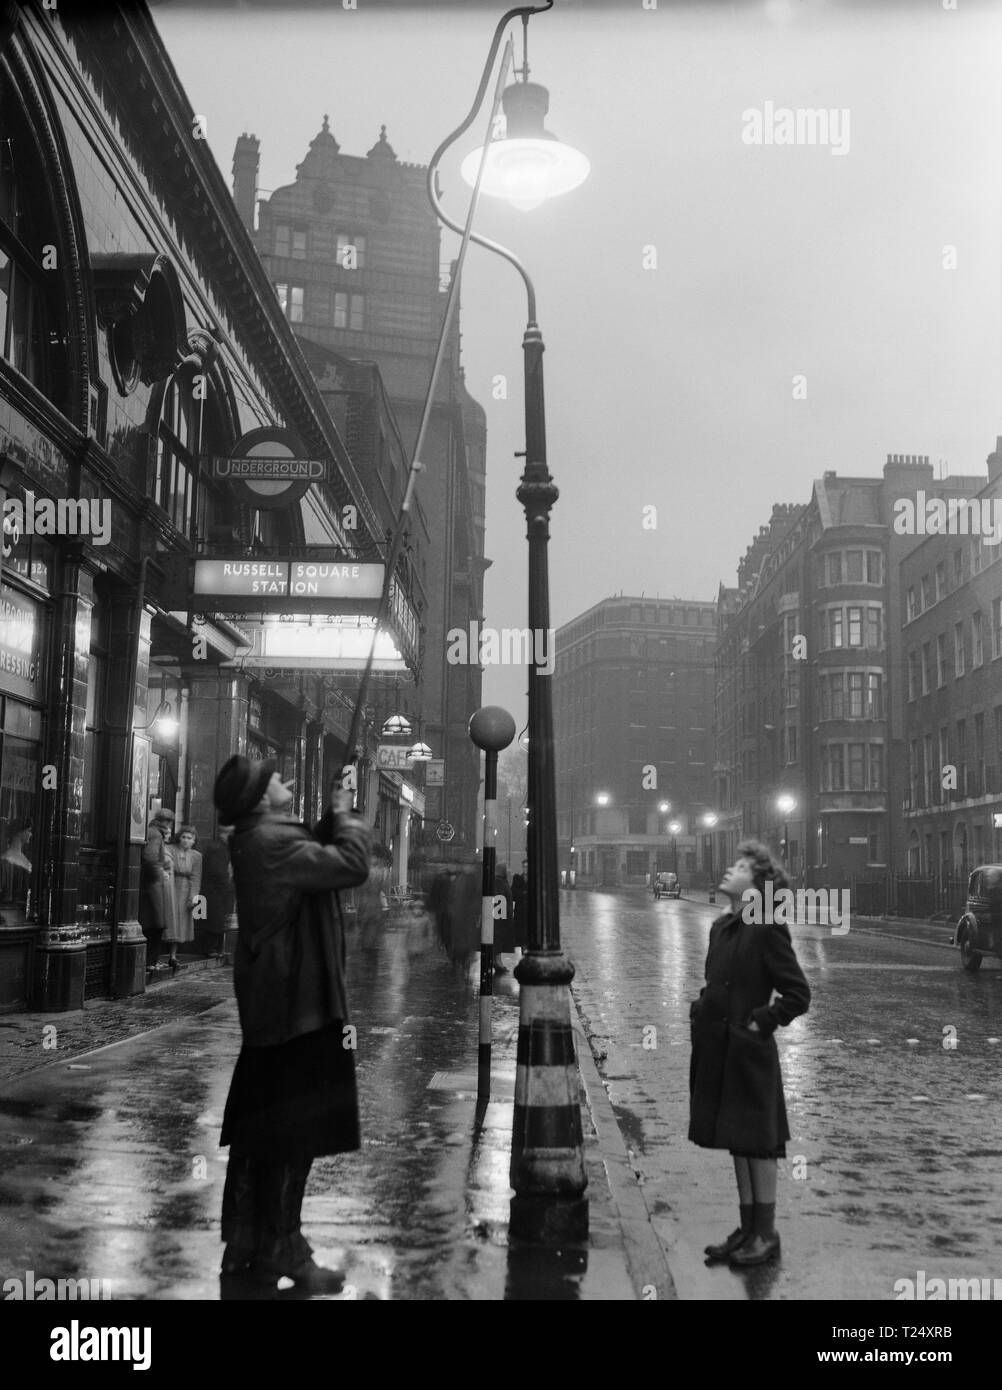 Fotografía en blanco y negro tomadas en 1950 fuera de la estación de metro de Russell Square en Londres, Inglaterra. Se muestra a un hombre de un gas de Iluminación lámpara de la calle, observados por un joven. Foto de stock